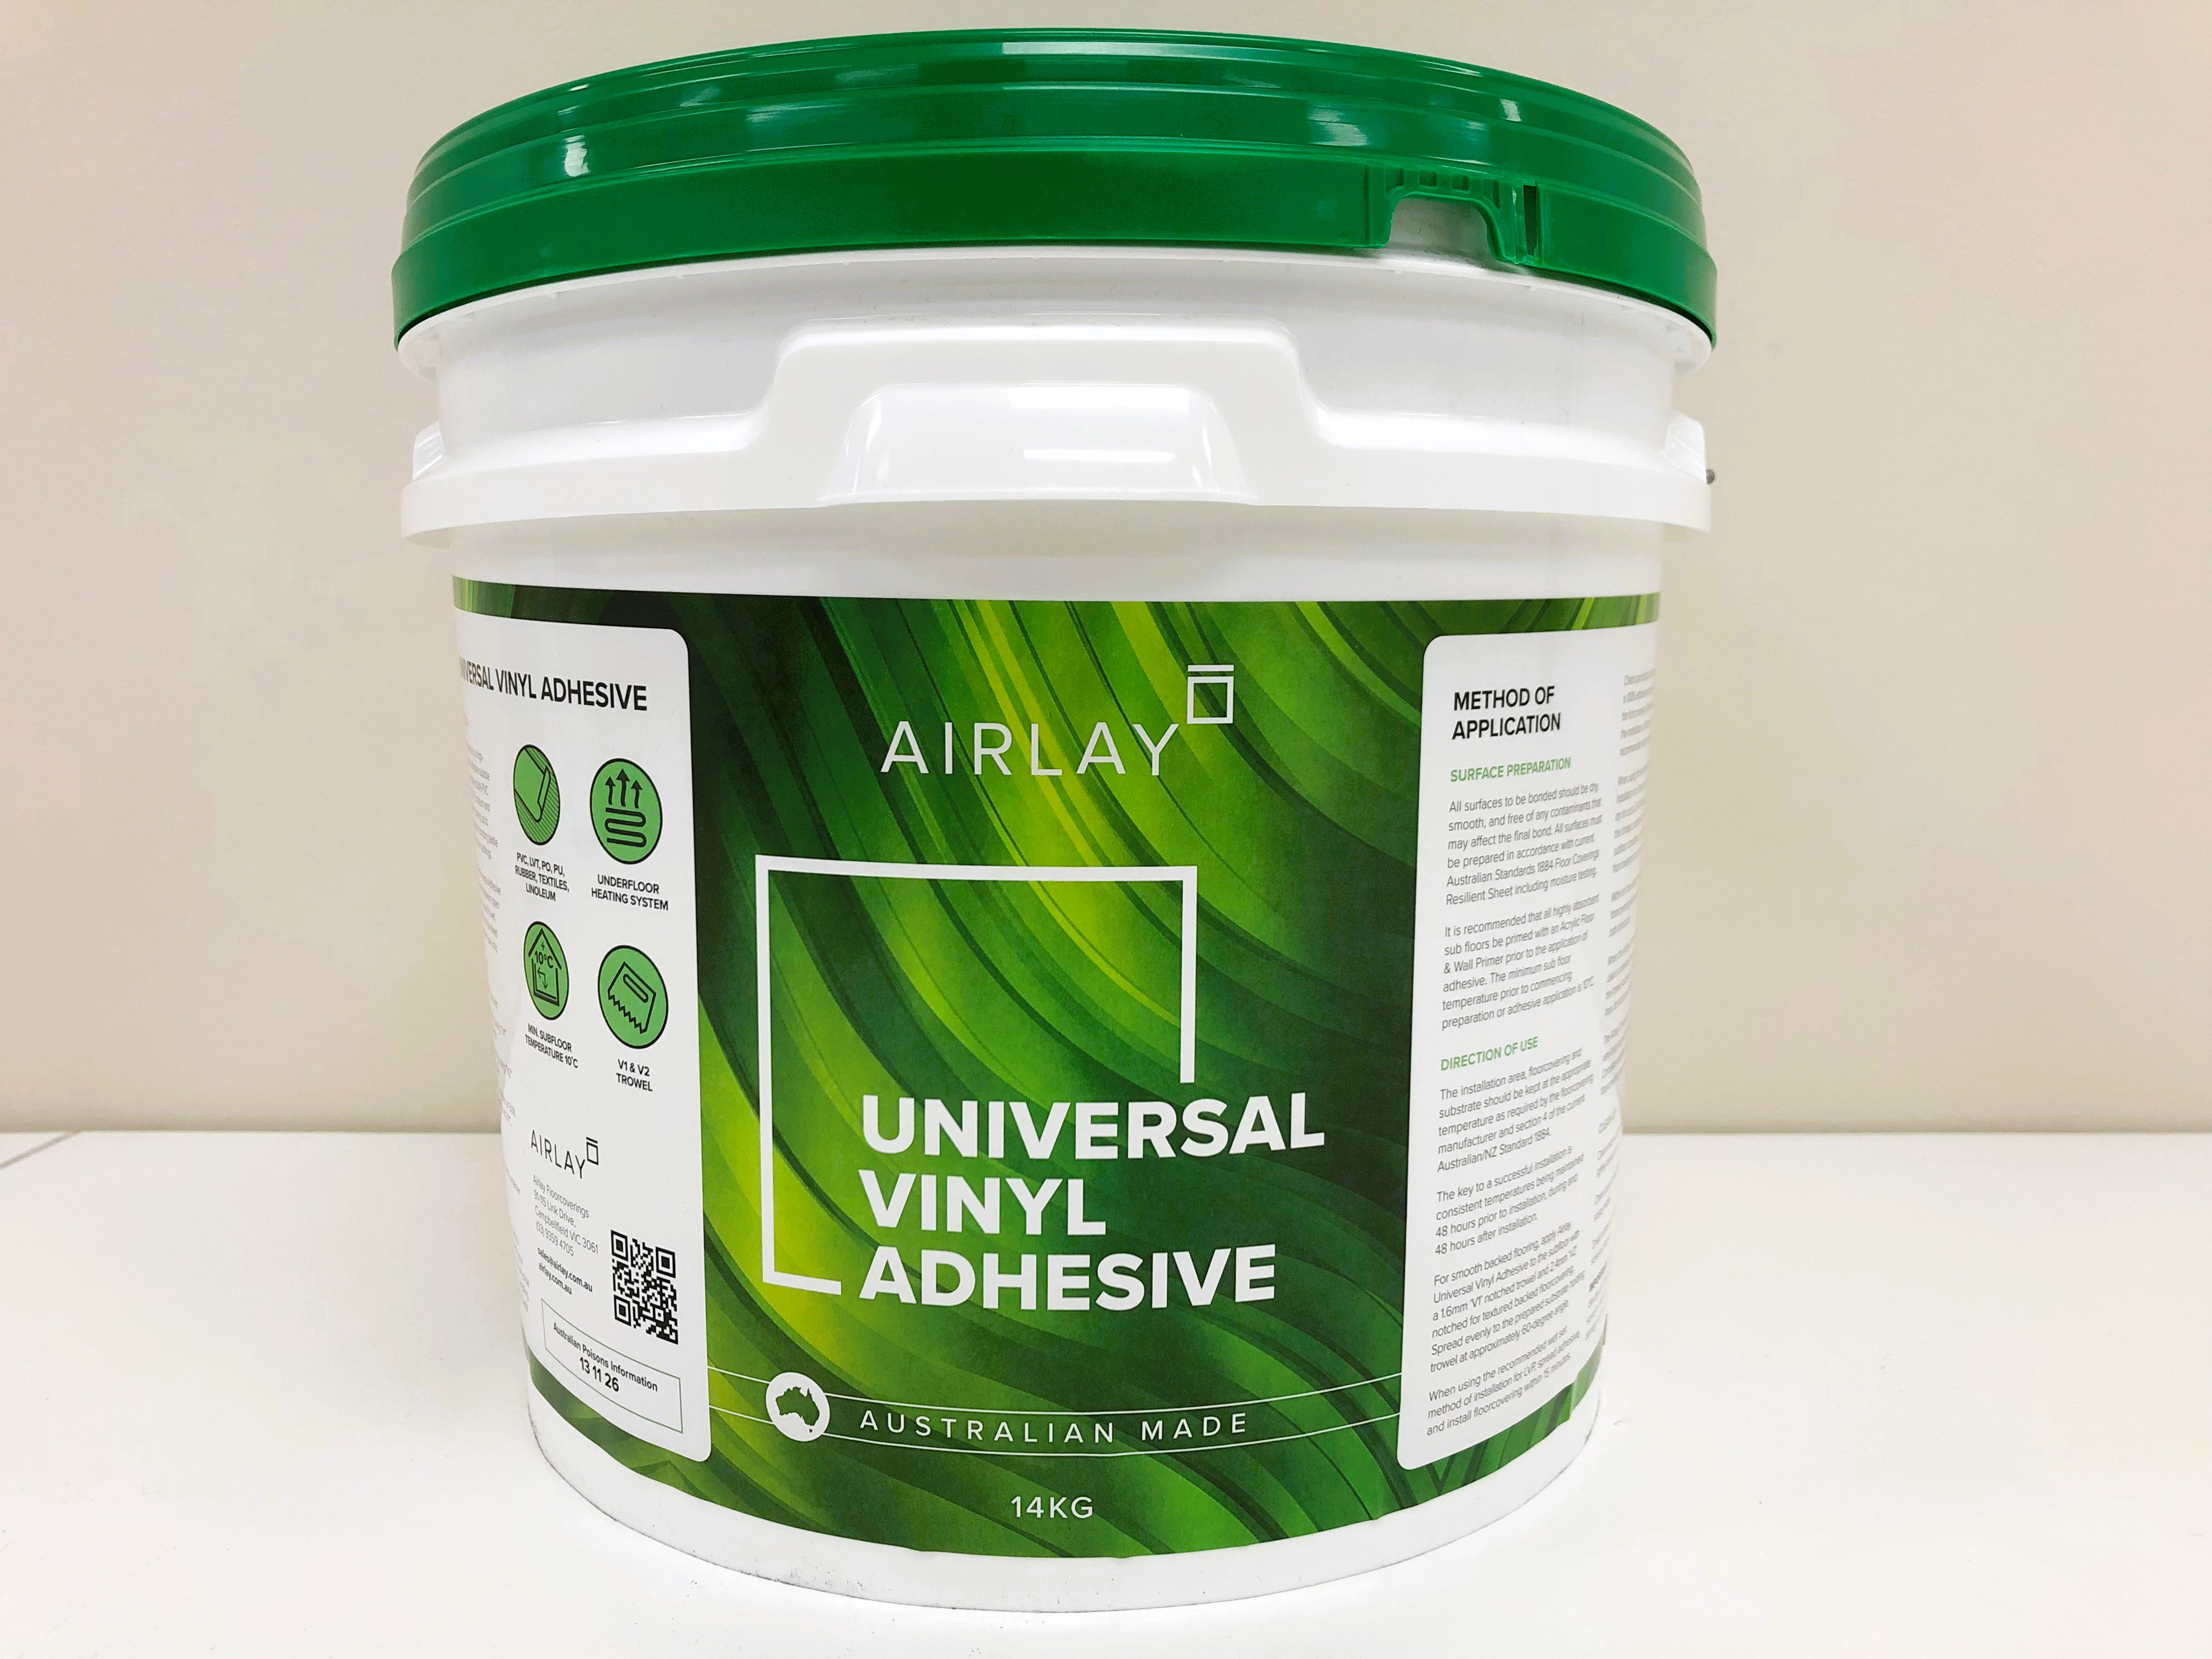 Airlay Universal Vinyl Adhesive